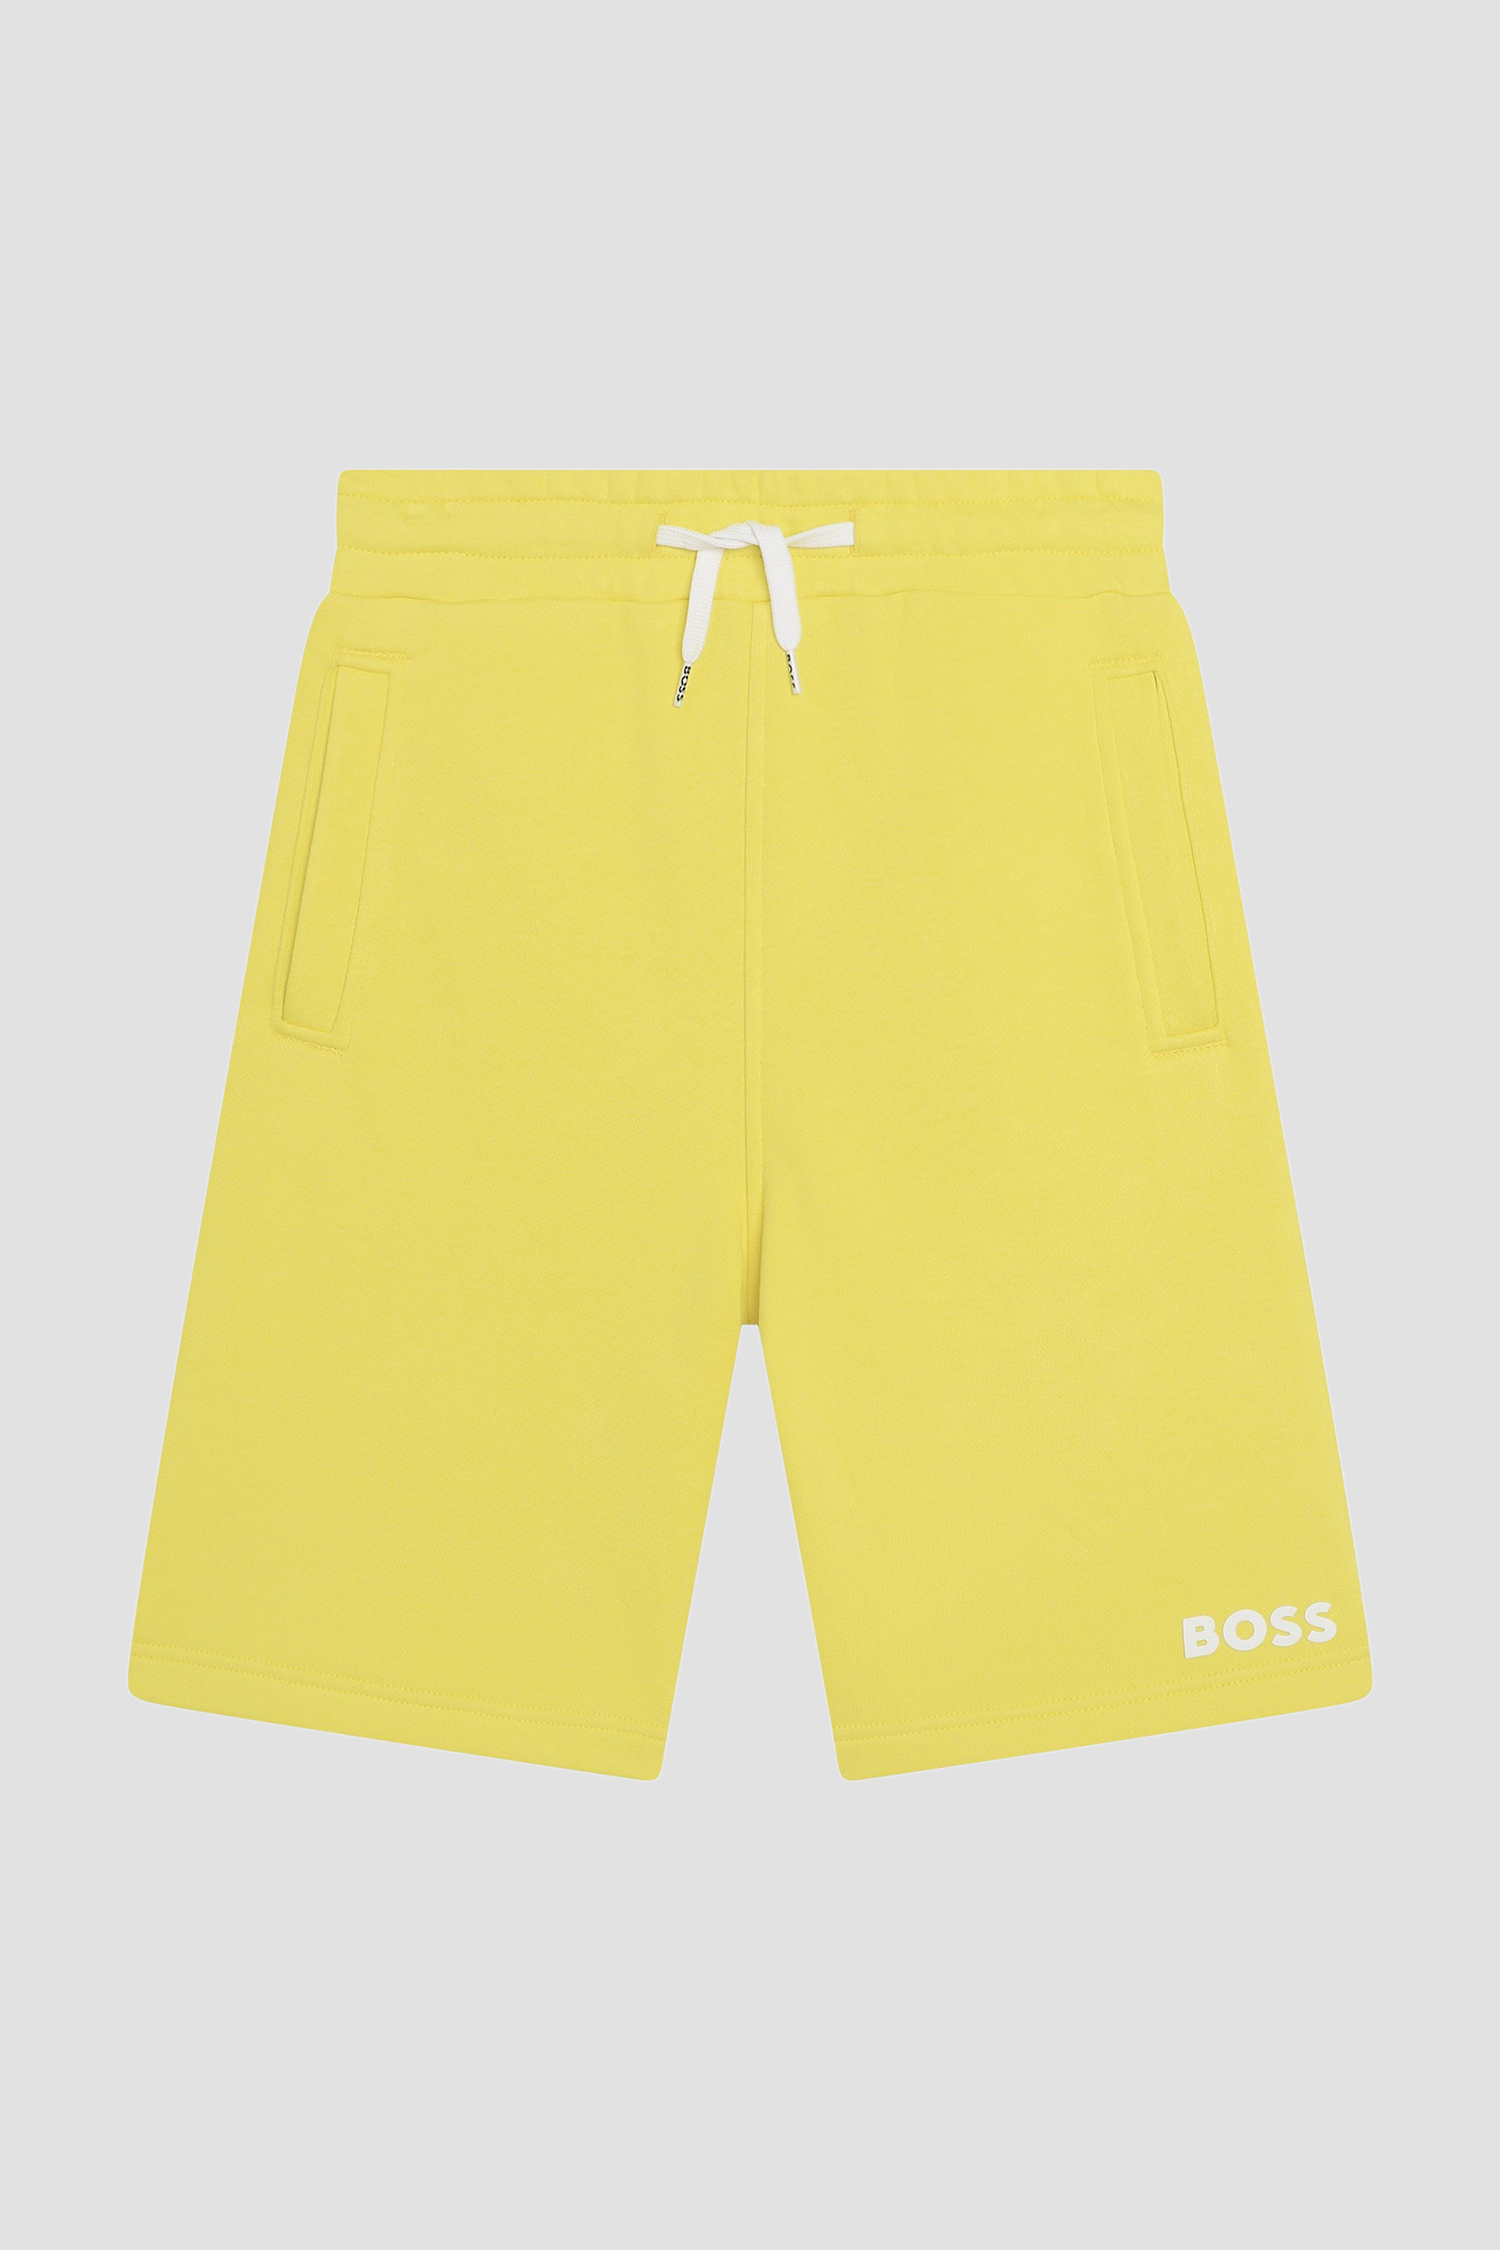 Дитячі жовті шорти BOSS kids J50680;508